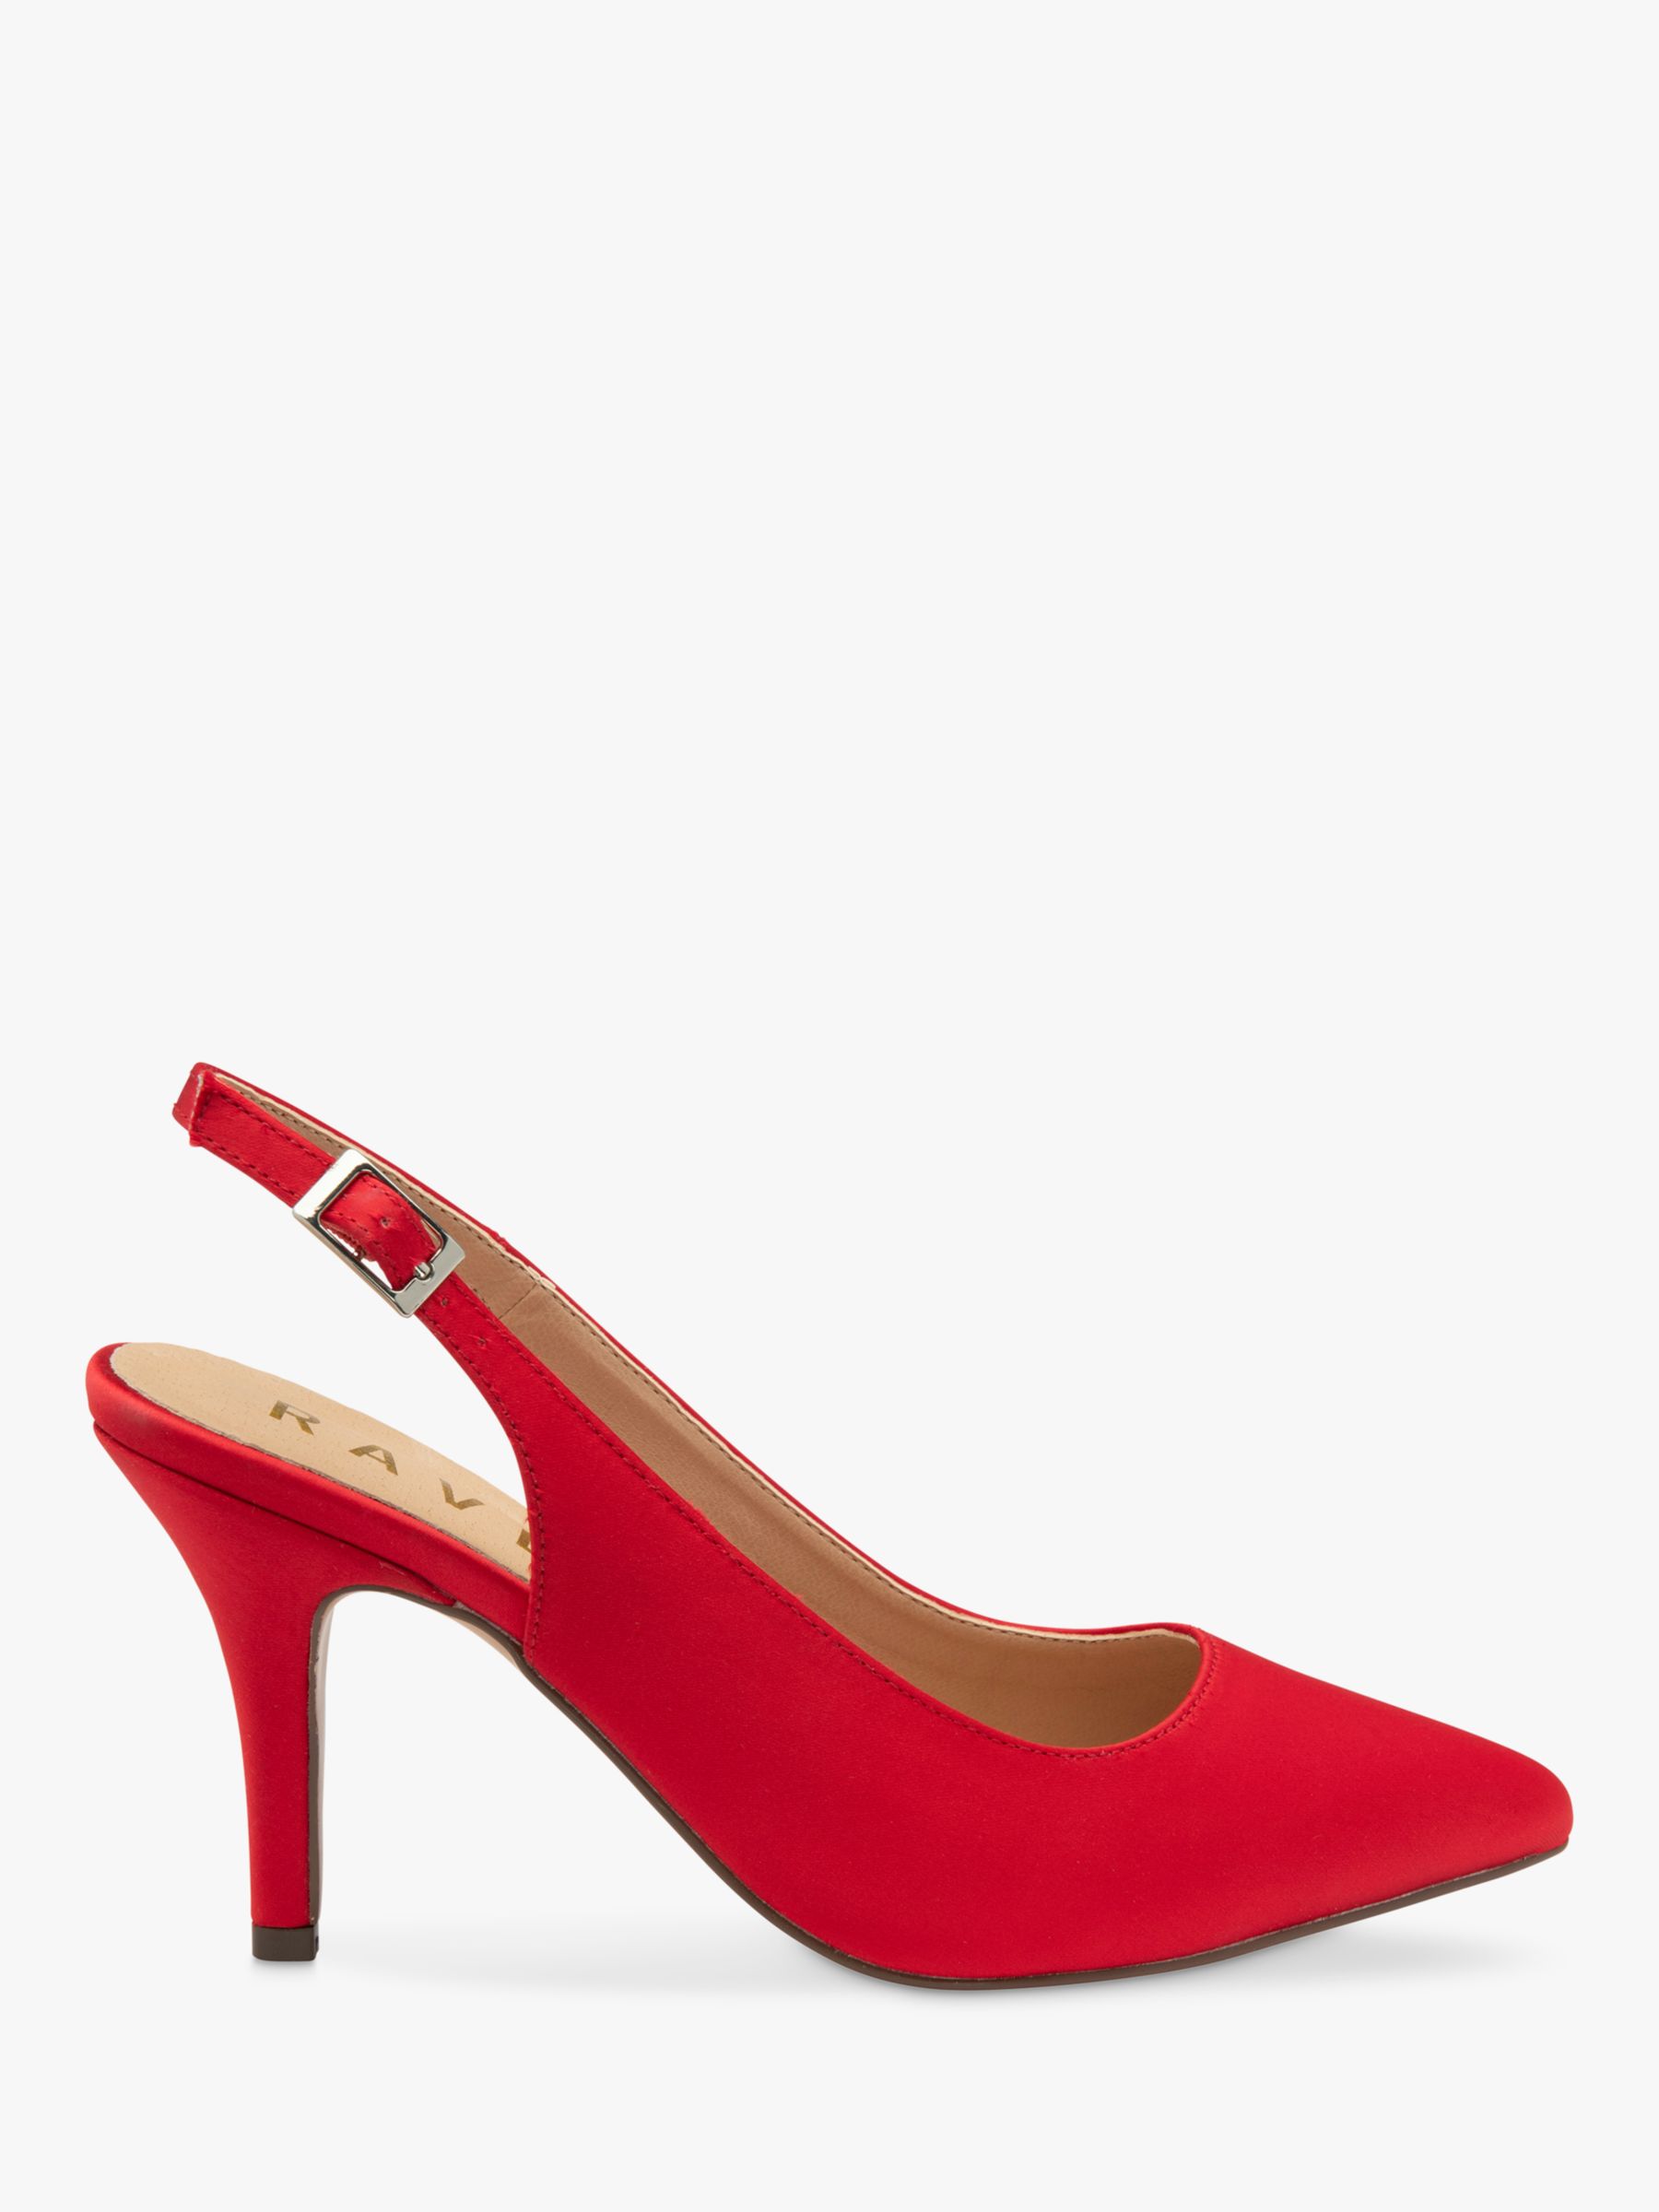 Ravel Kavan Satin Stiletto Heel Slingback Court Shoes, Red, 3